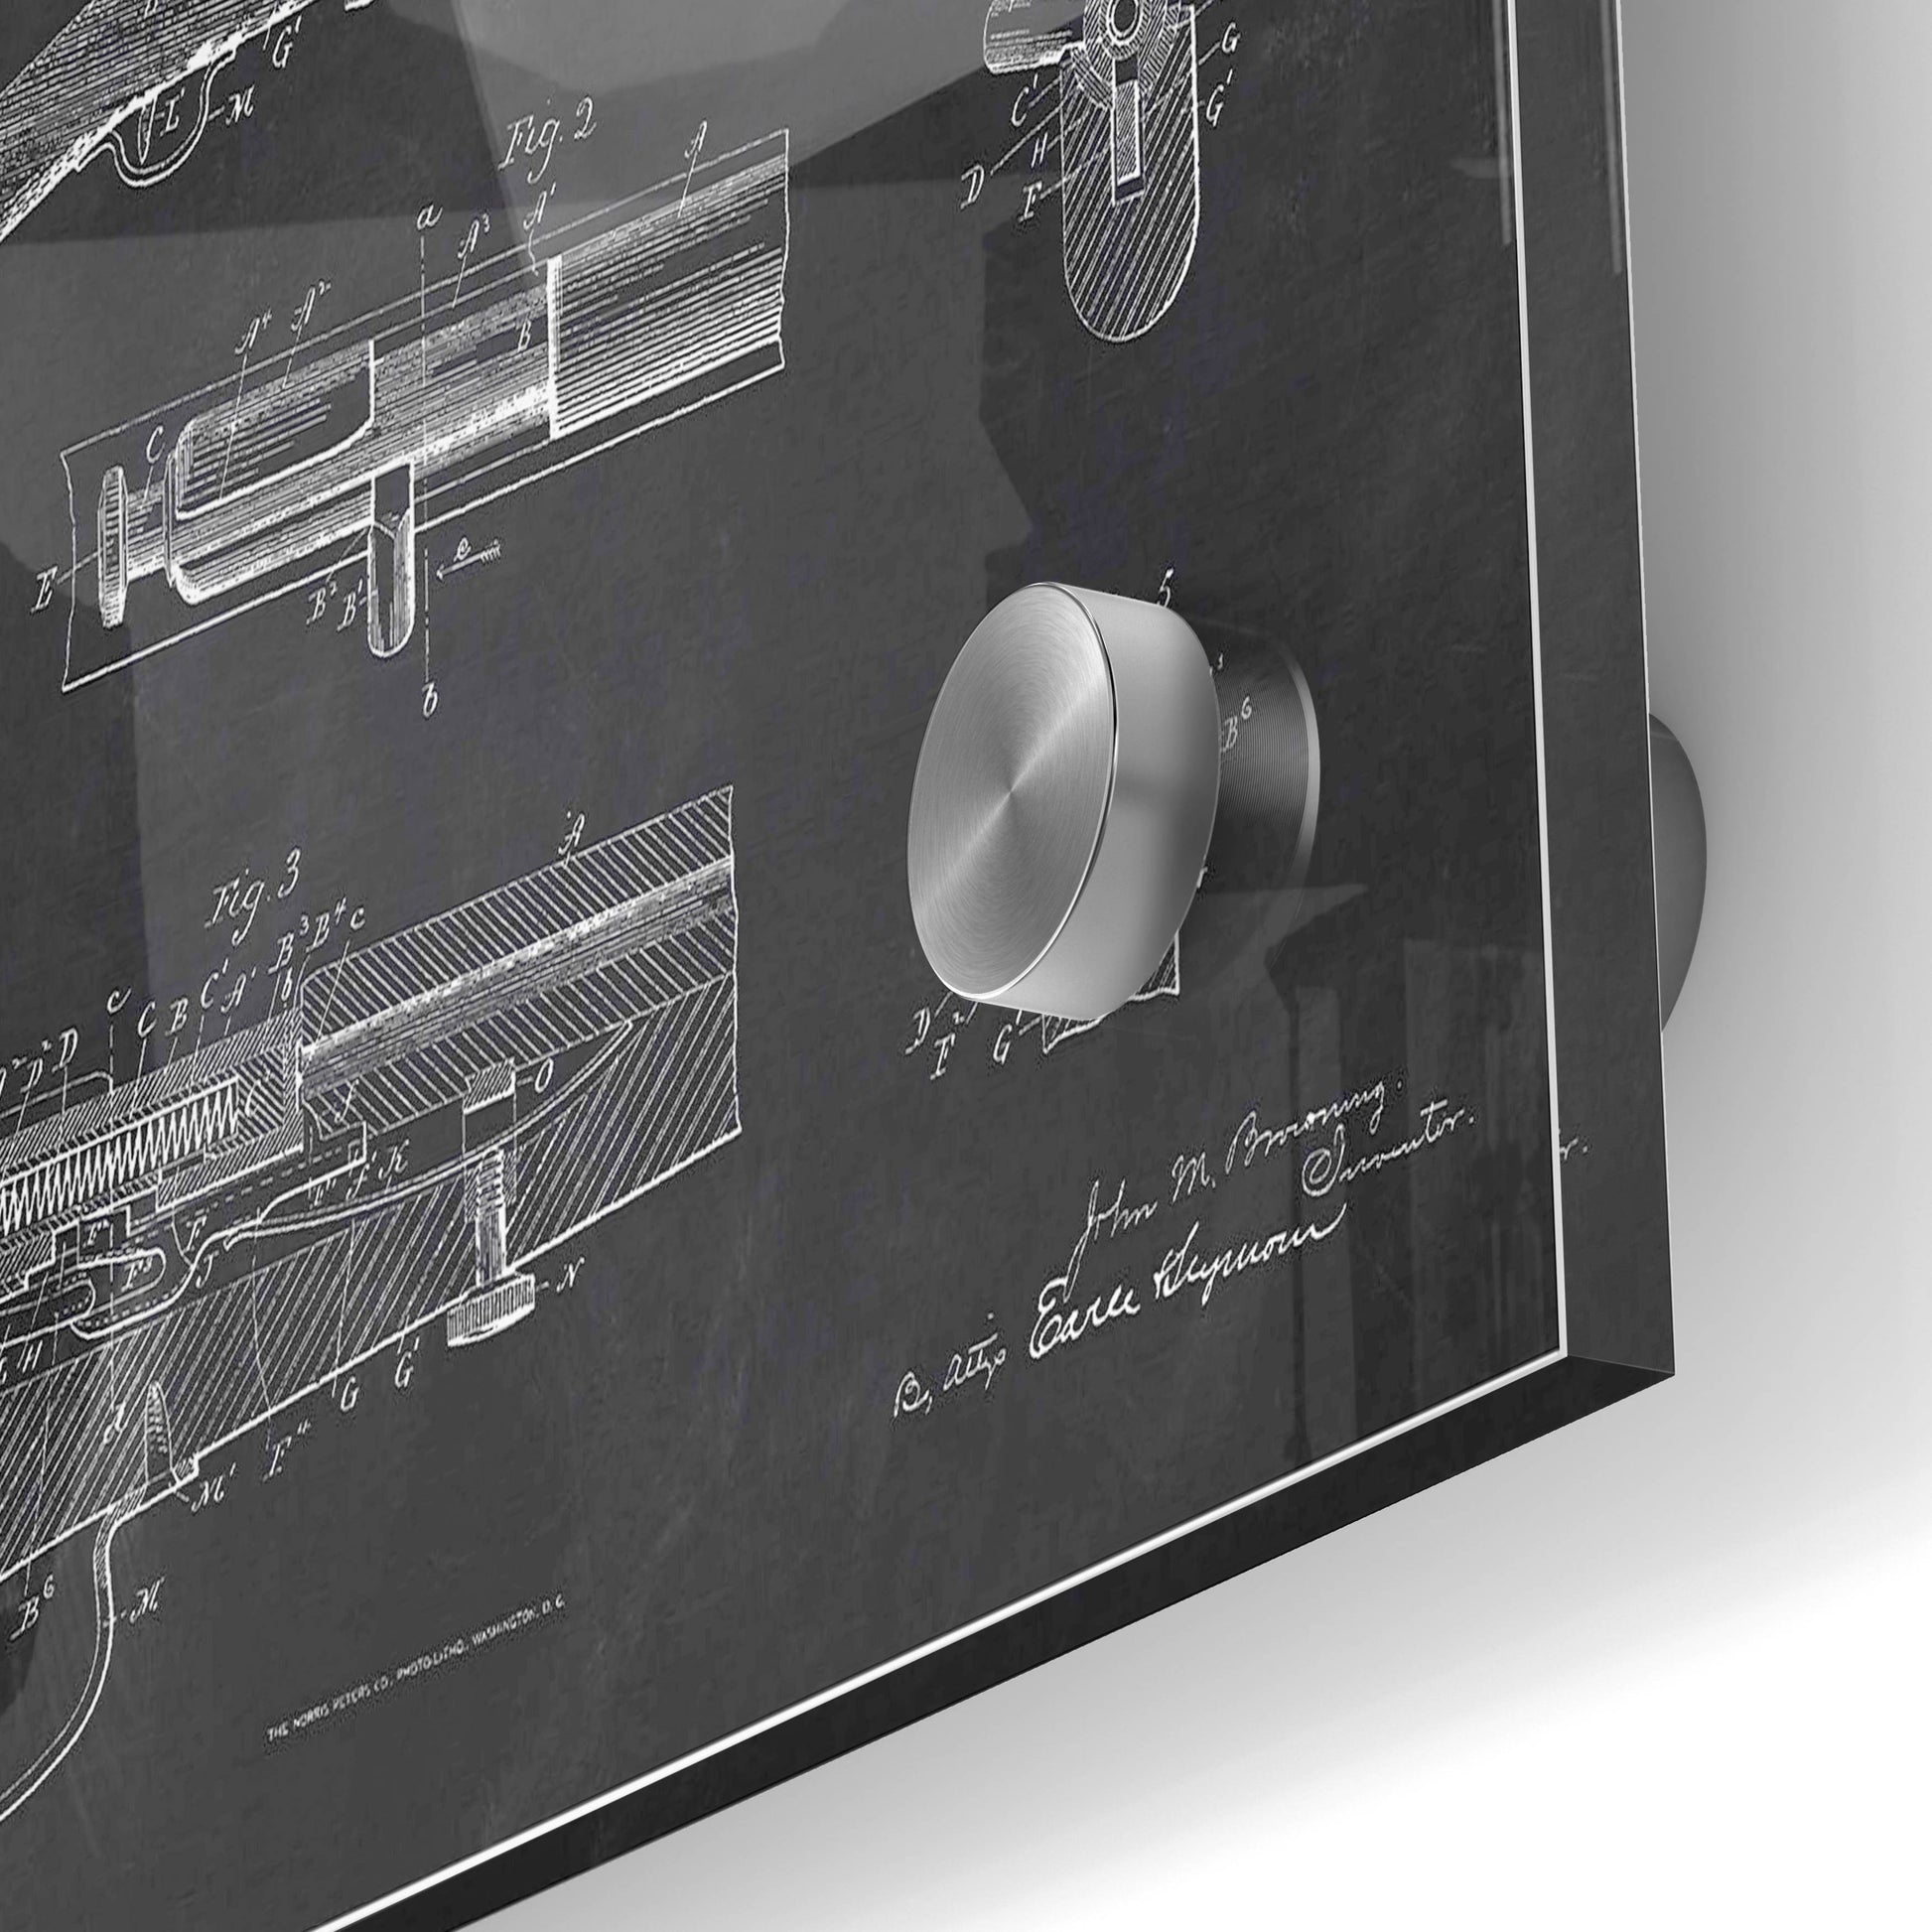 Epic Art 'Rifle Blueprint Patent Chalkboard' Acrylic Glass Wall Art,24x36